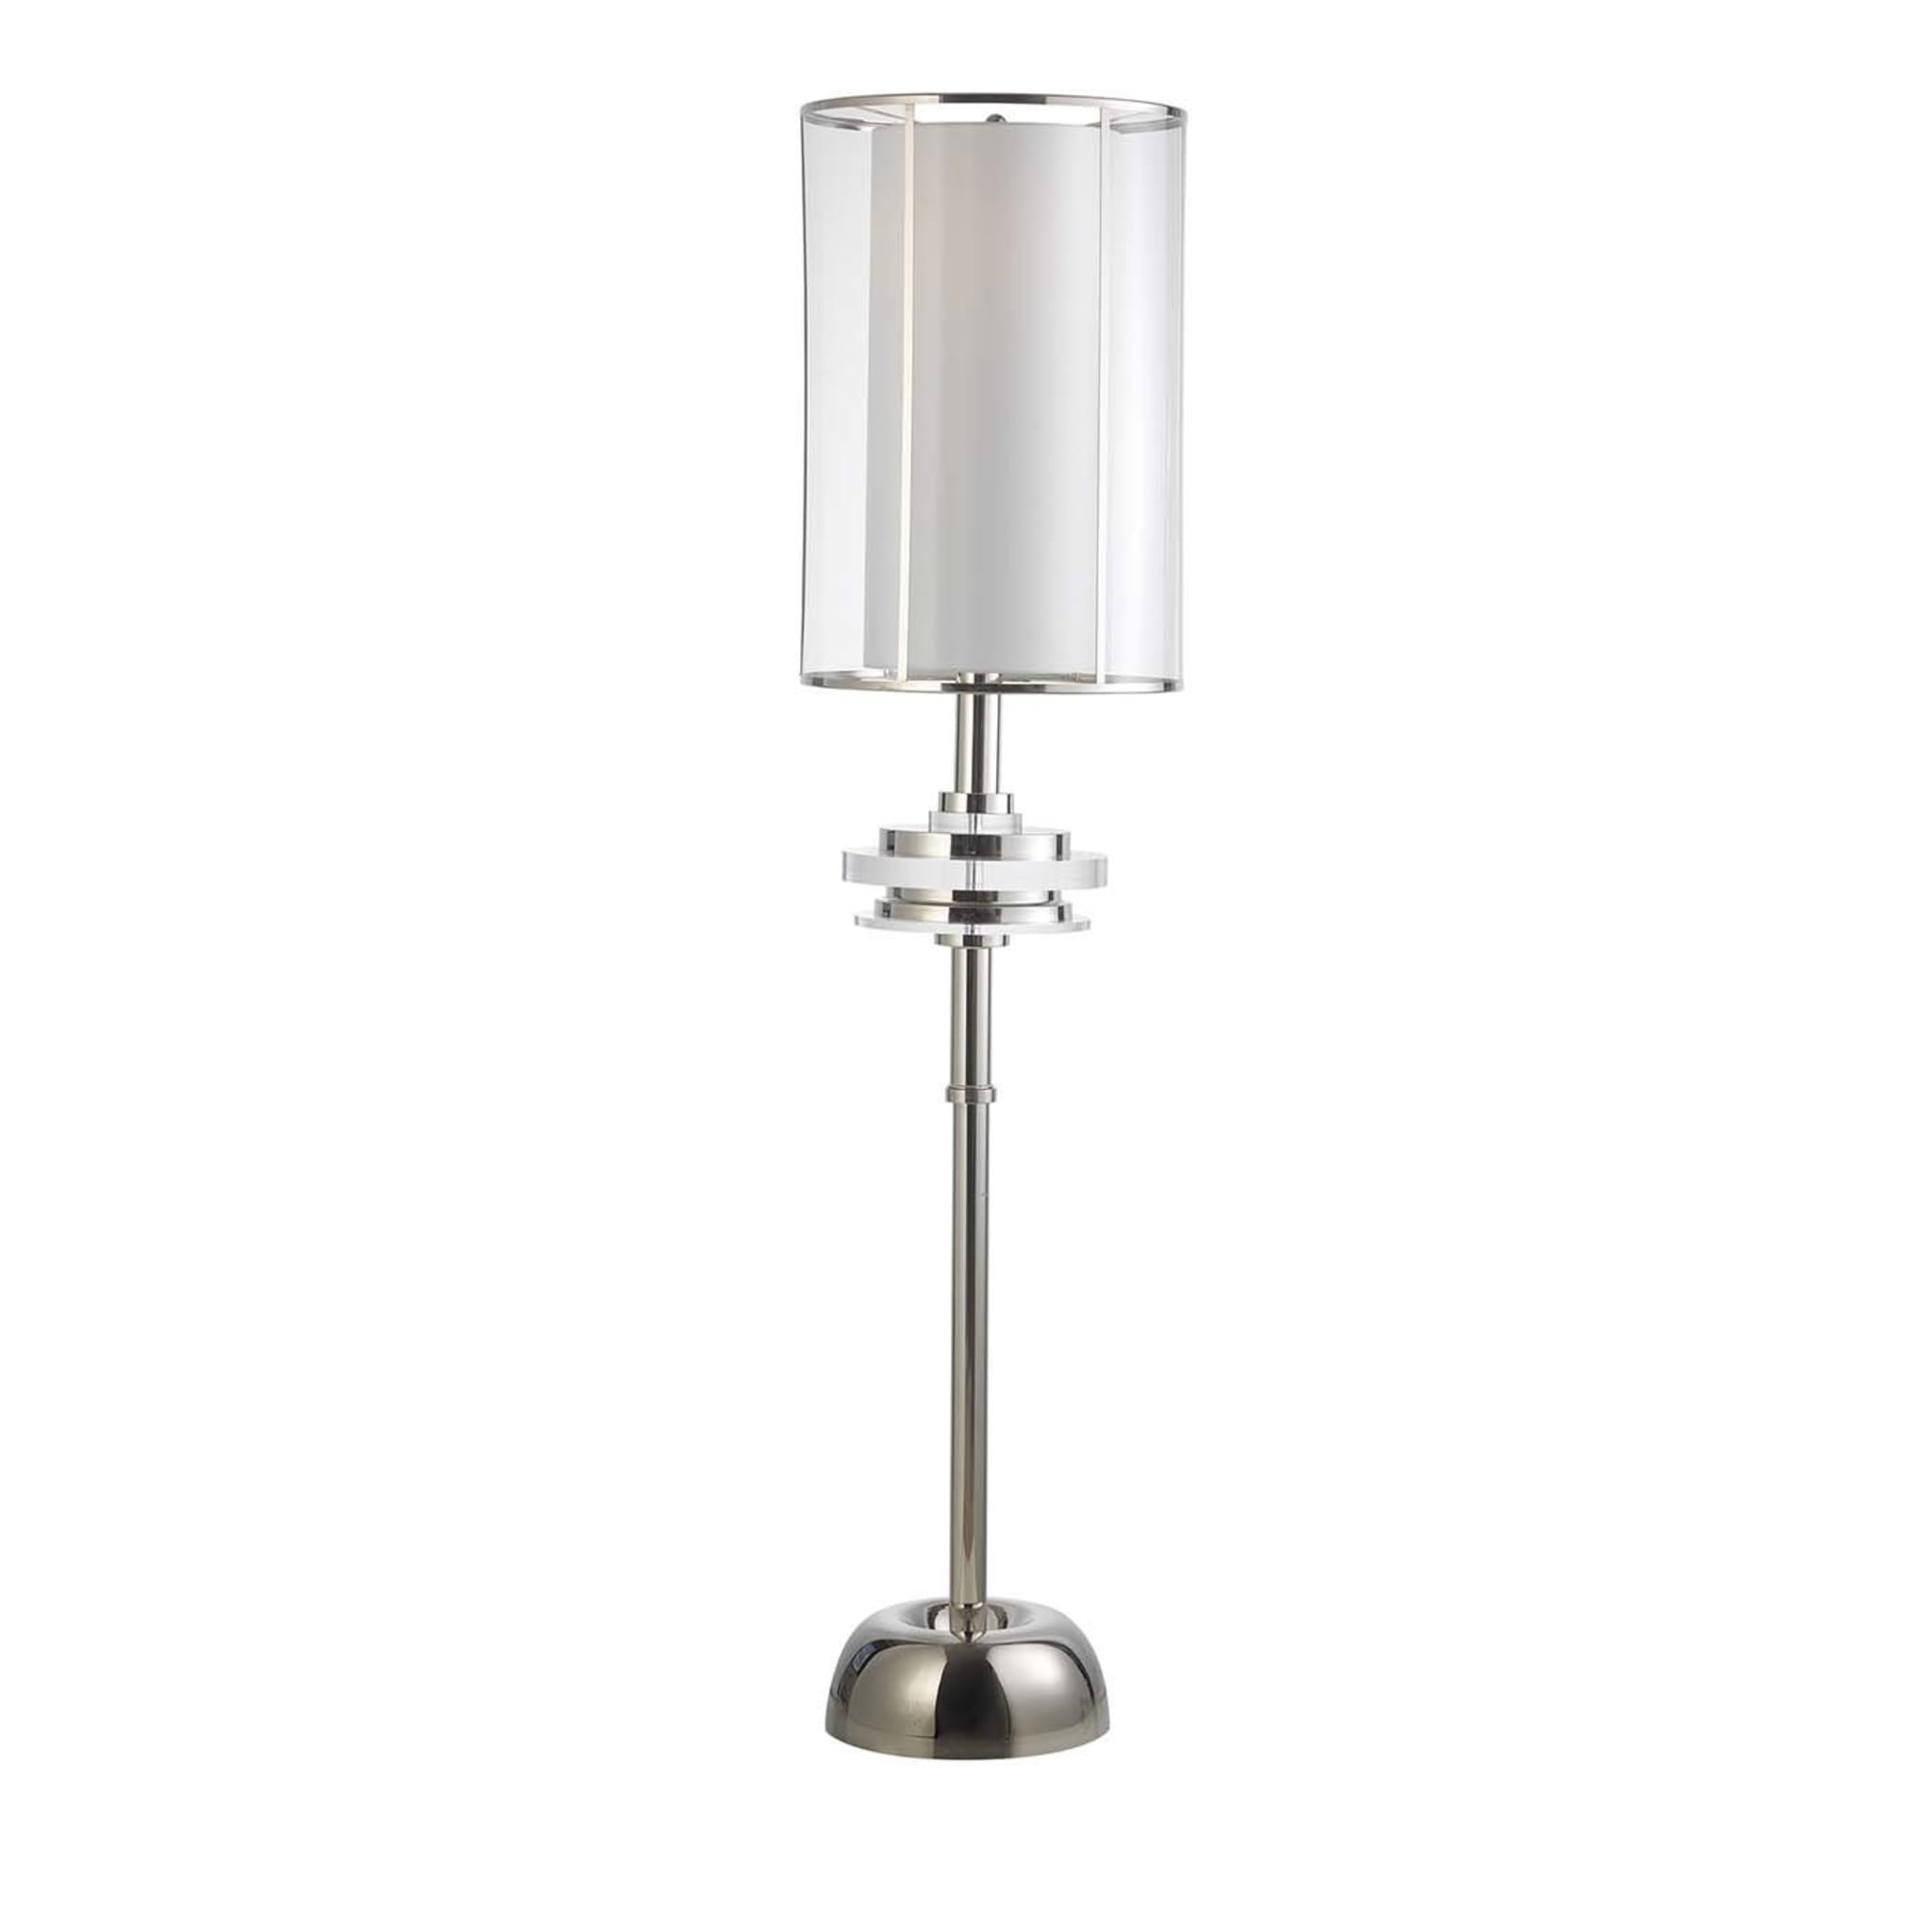 Z629 Brass Nickel Floor Lamp - Main view